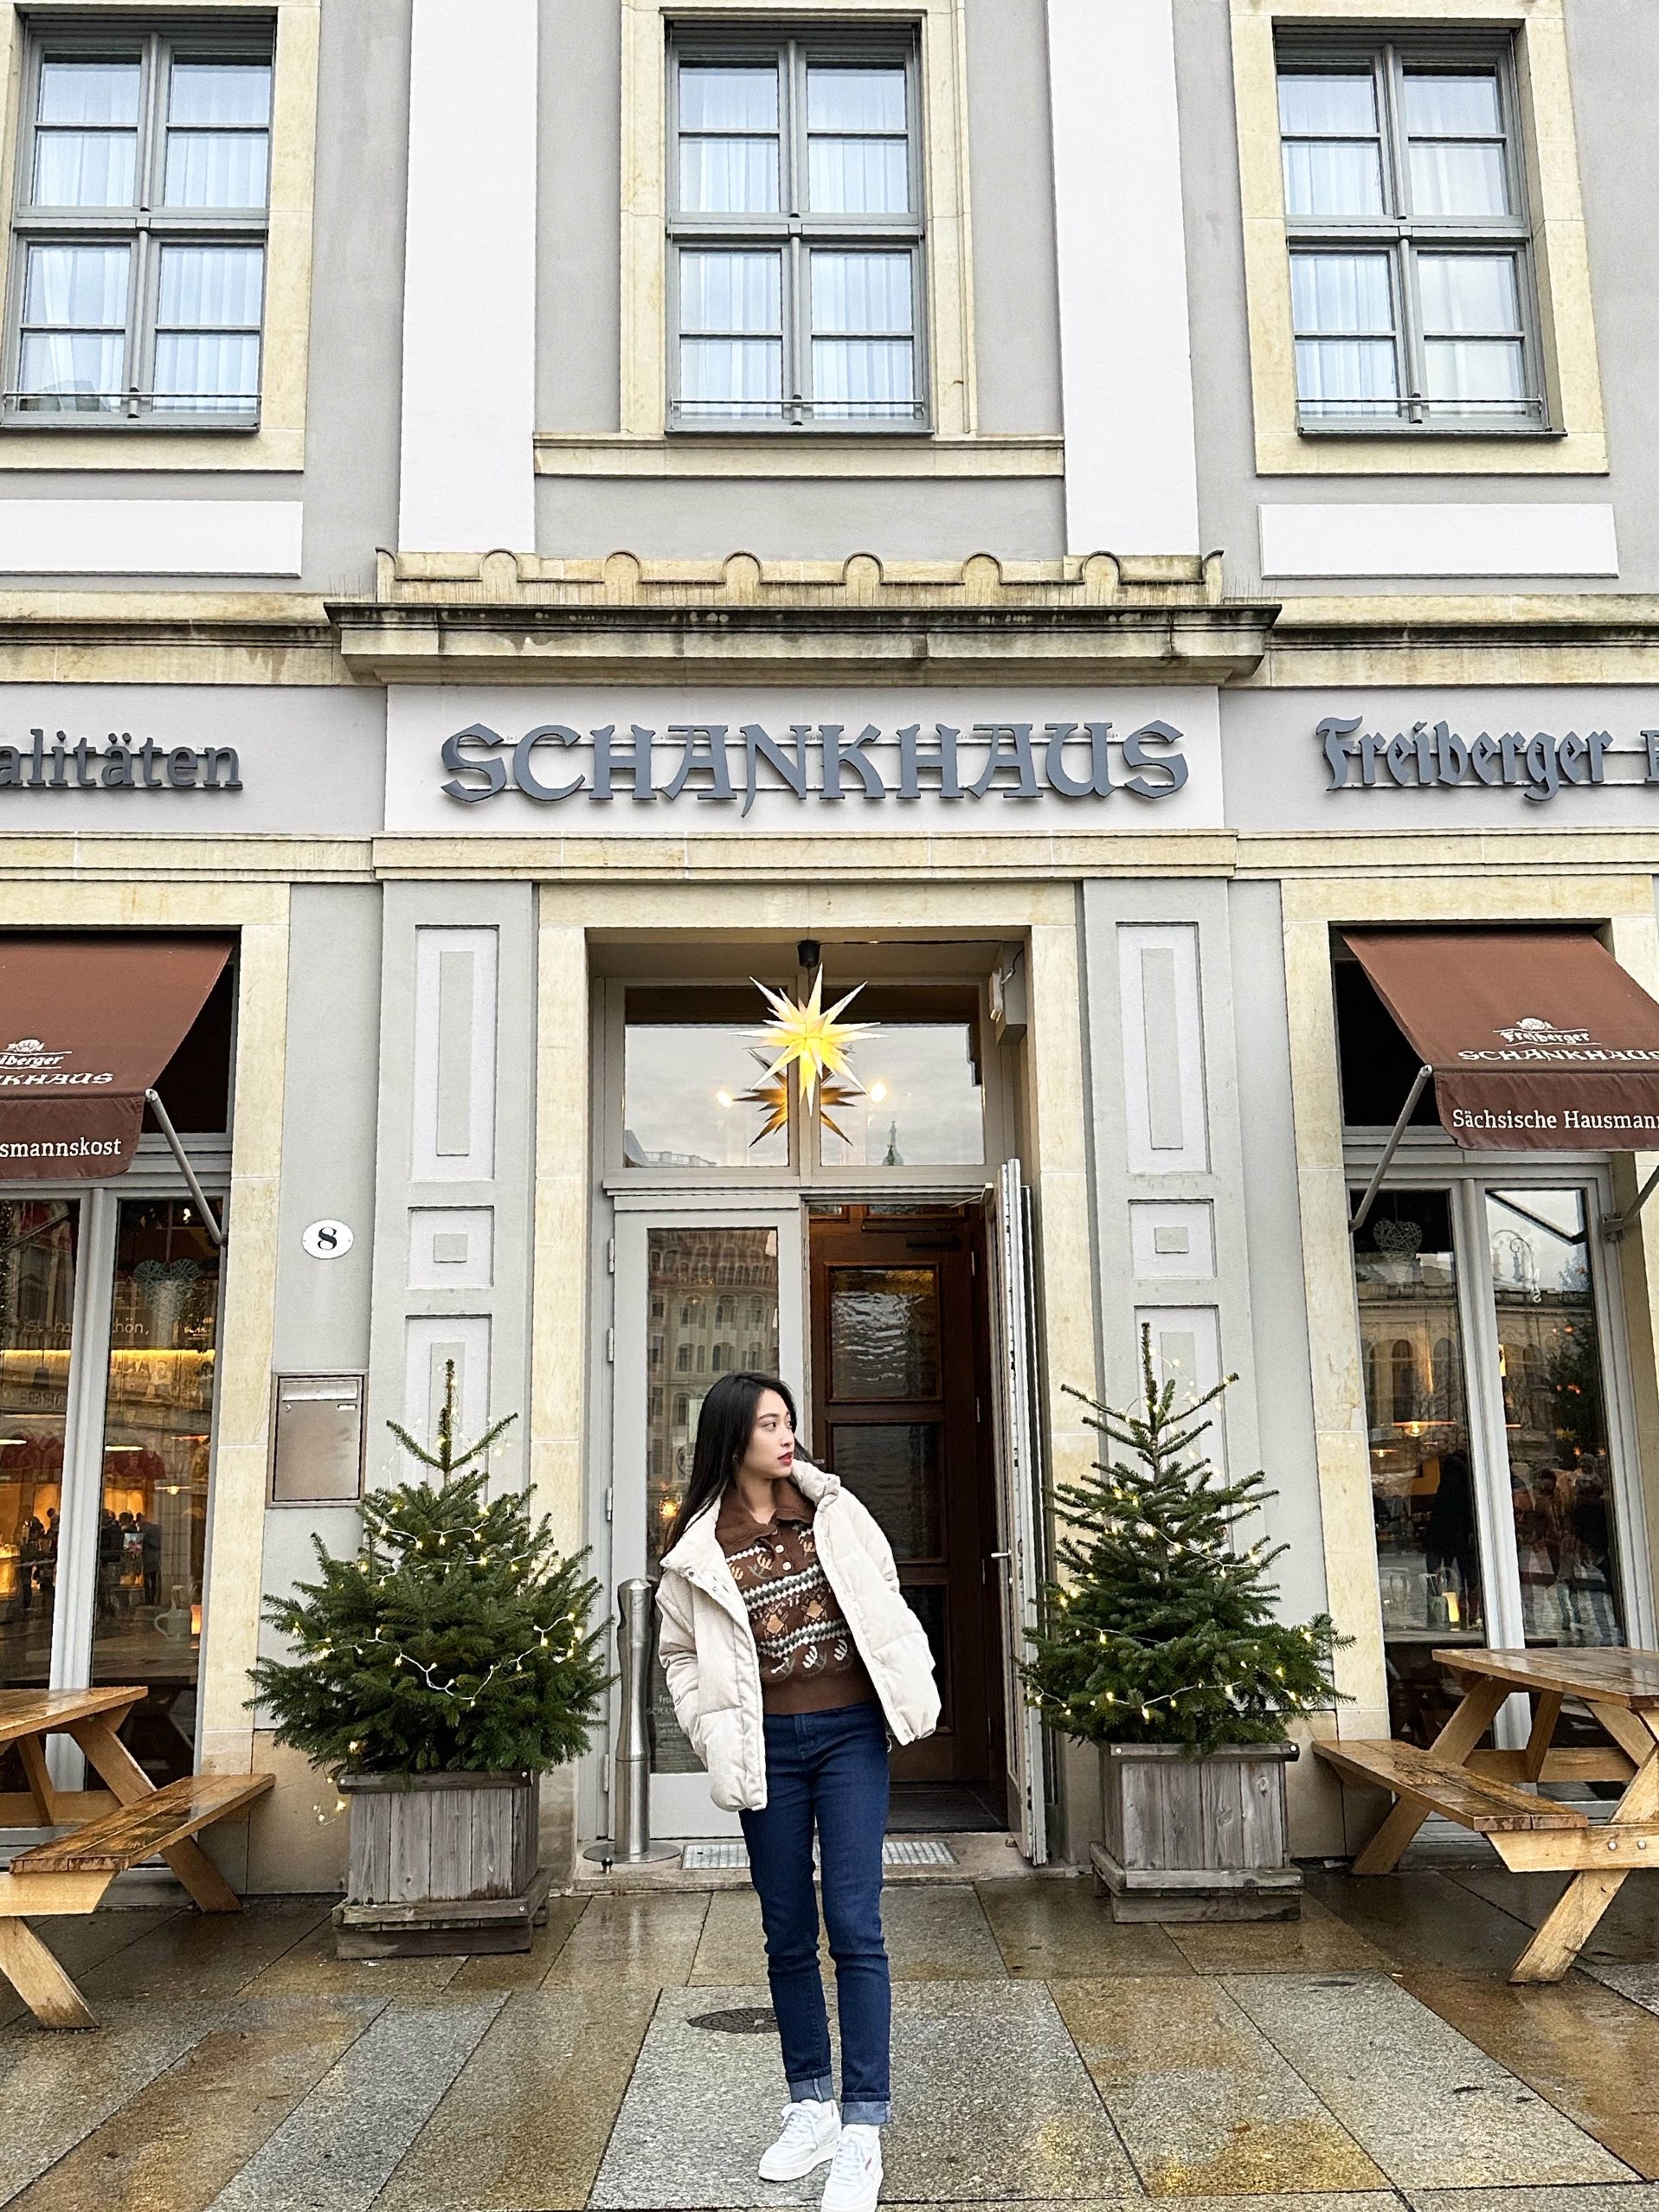 德国德累斯顿著名的美食店:Freiberger Schankhaus